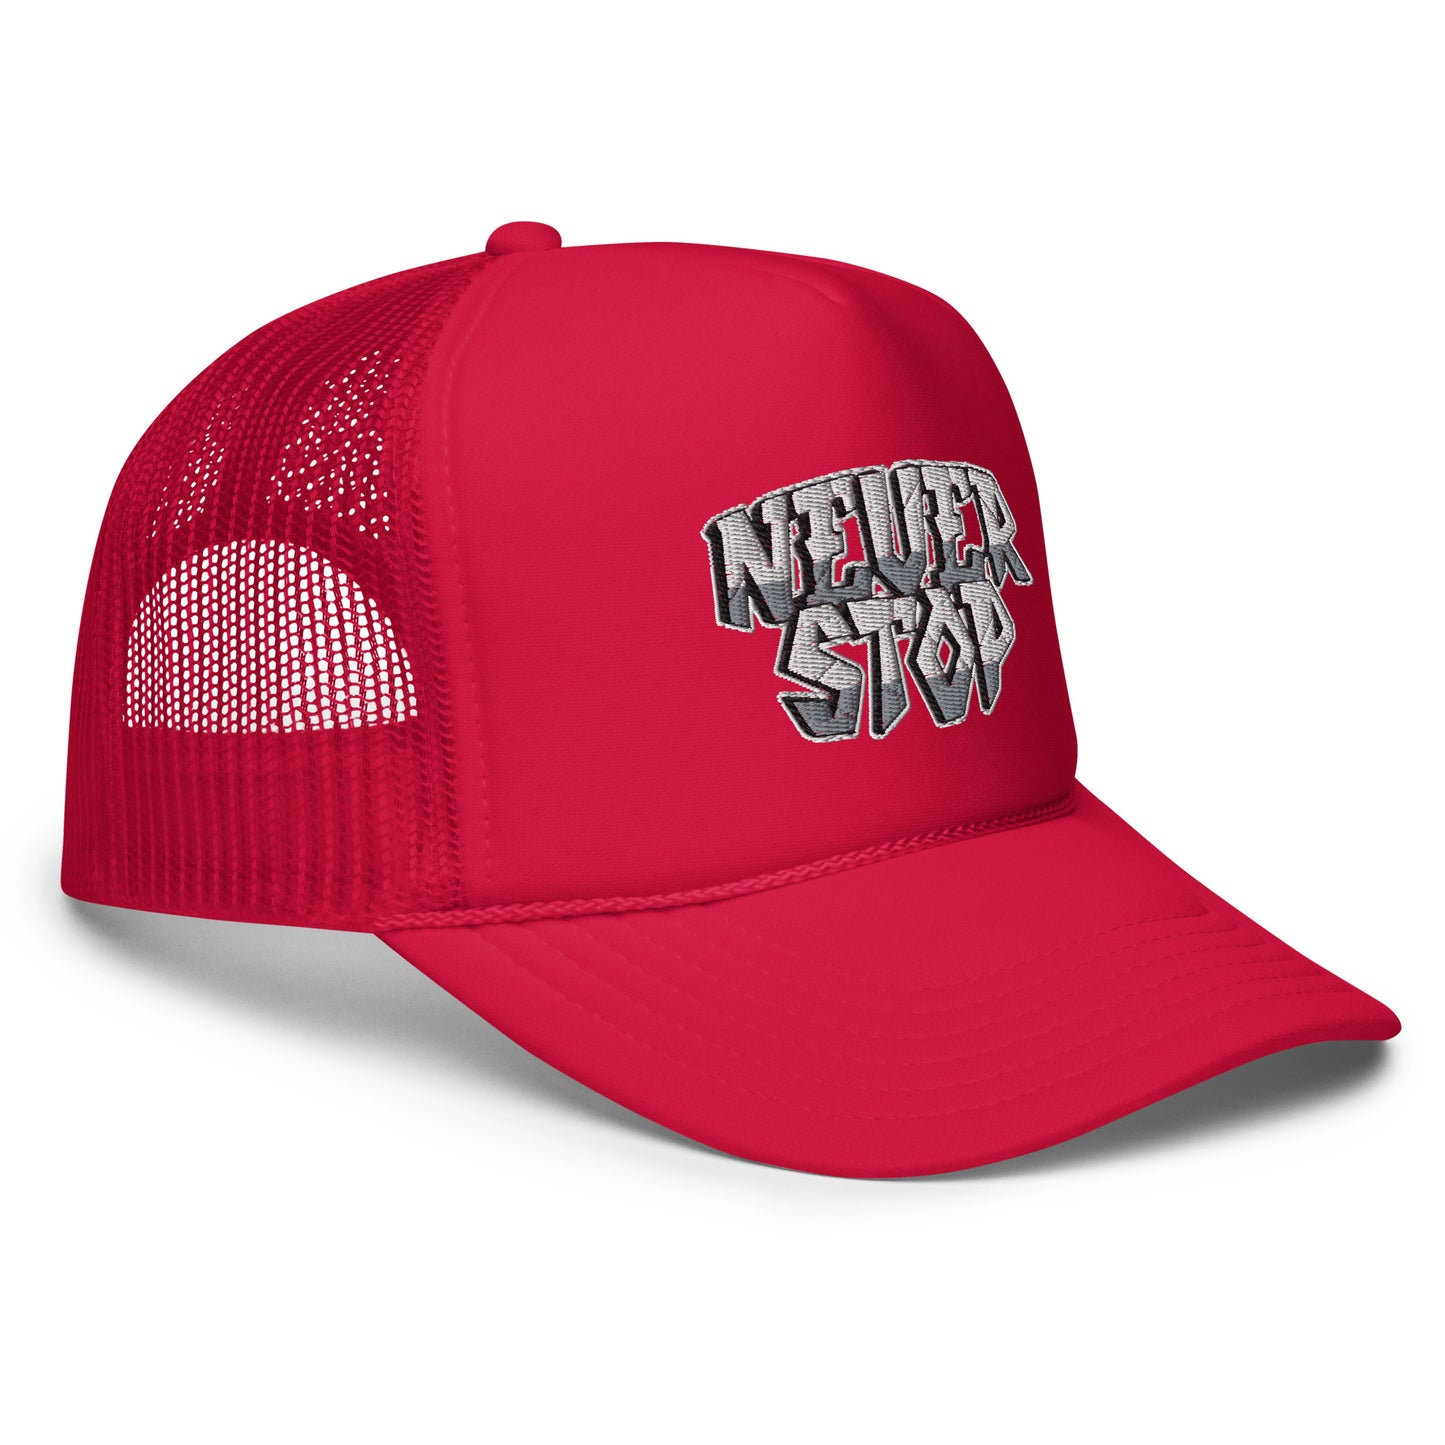 Never Stop- Trucker Hat